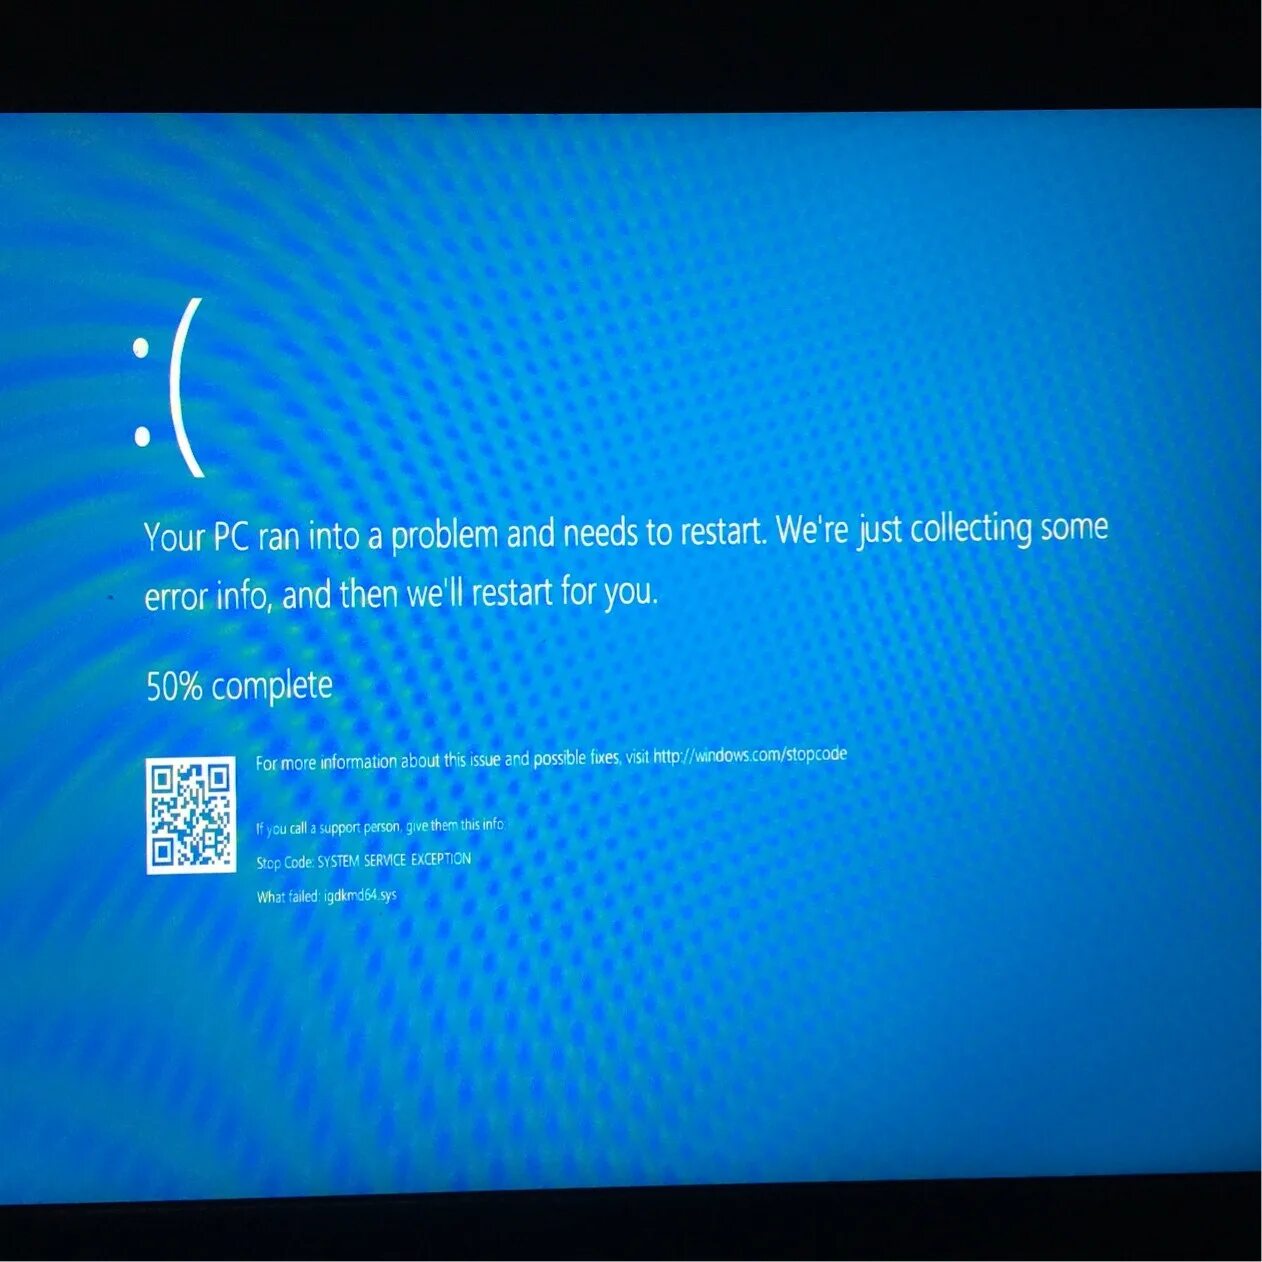 Синий экран при установки драйвера. ПК экран смерти Windows 10. Синий экран смерти Windows 10. Синий экран смерти виндовс 10 Оперативная память. Голубой экран виндовс 10.